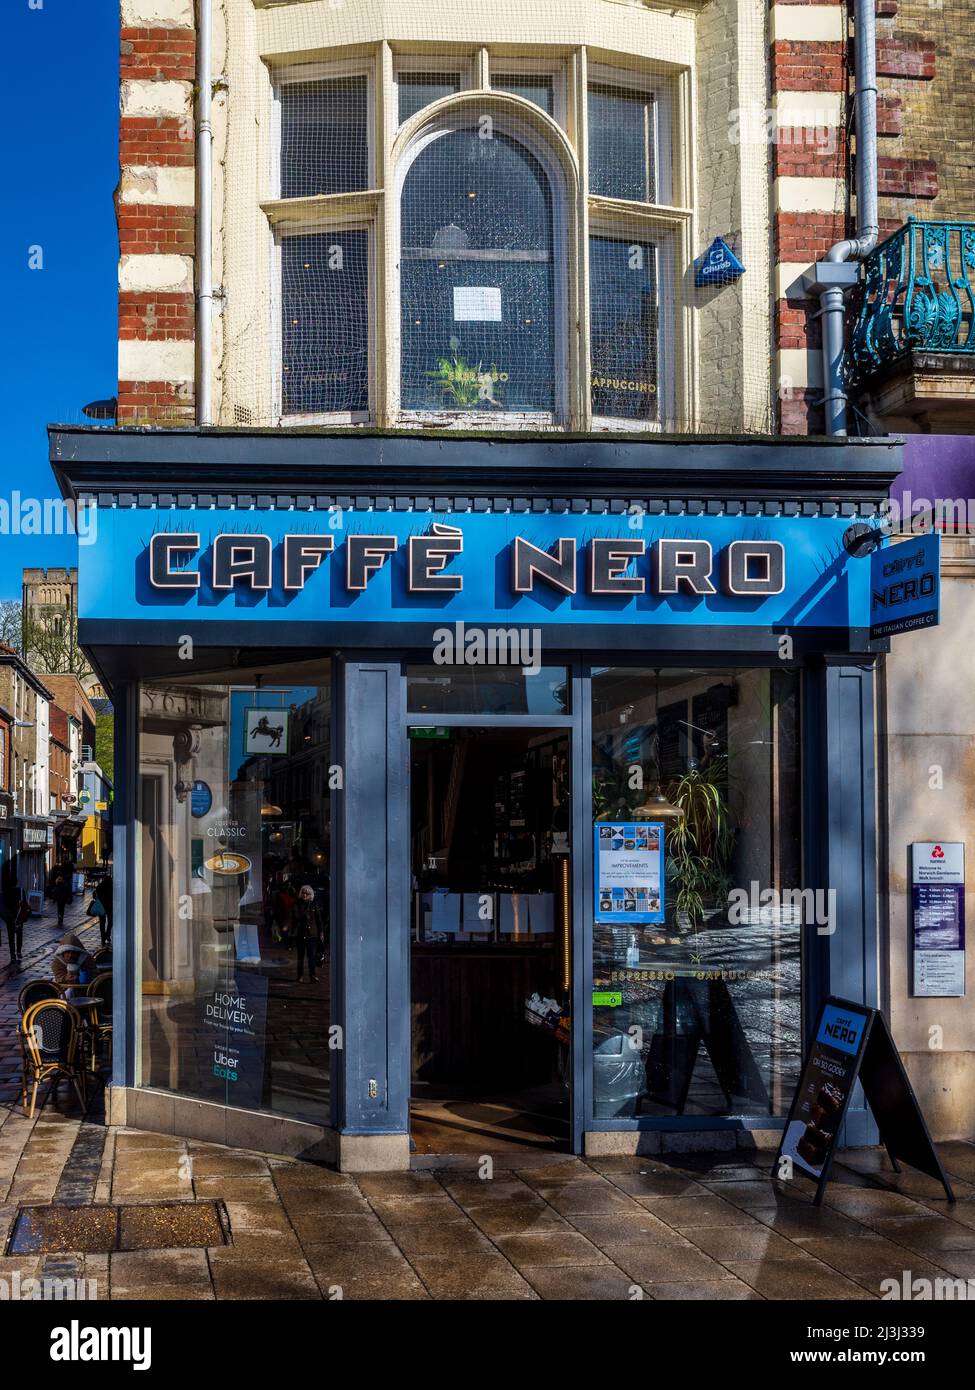 Caffe Nero Sign - Cafe Nero - Caffè Nero - Beschilderung vor einem Caffe Nero Coffee Shop in Norwich UK Stockfoto